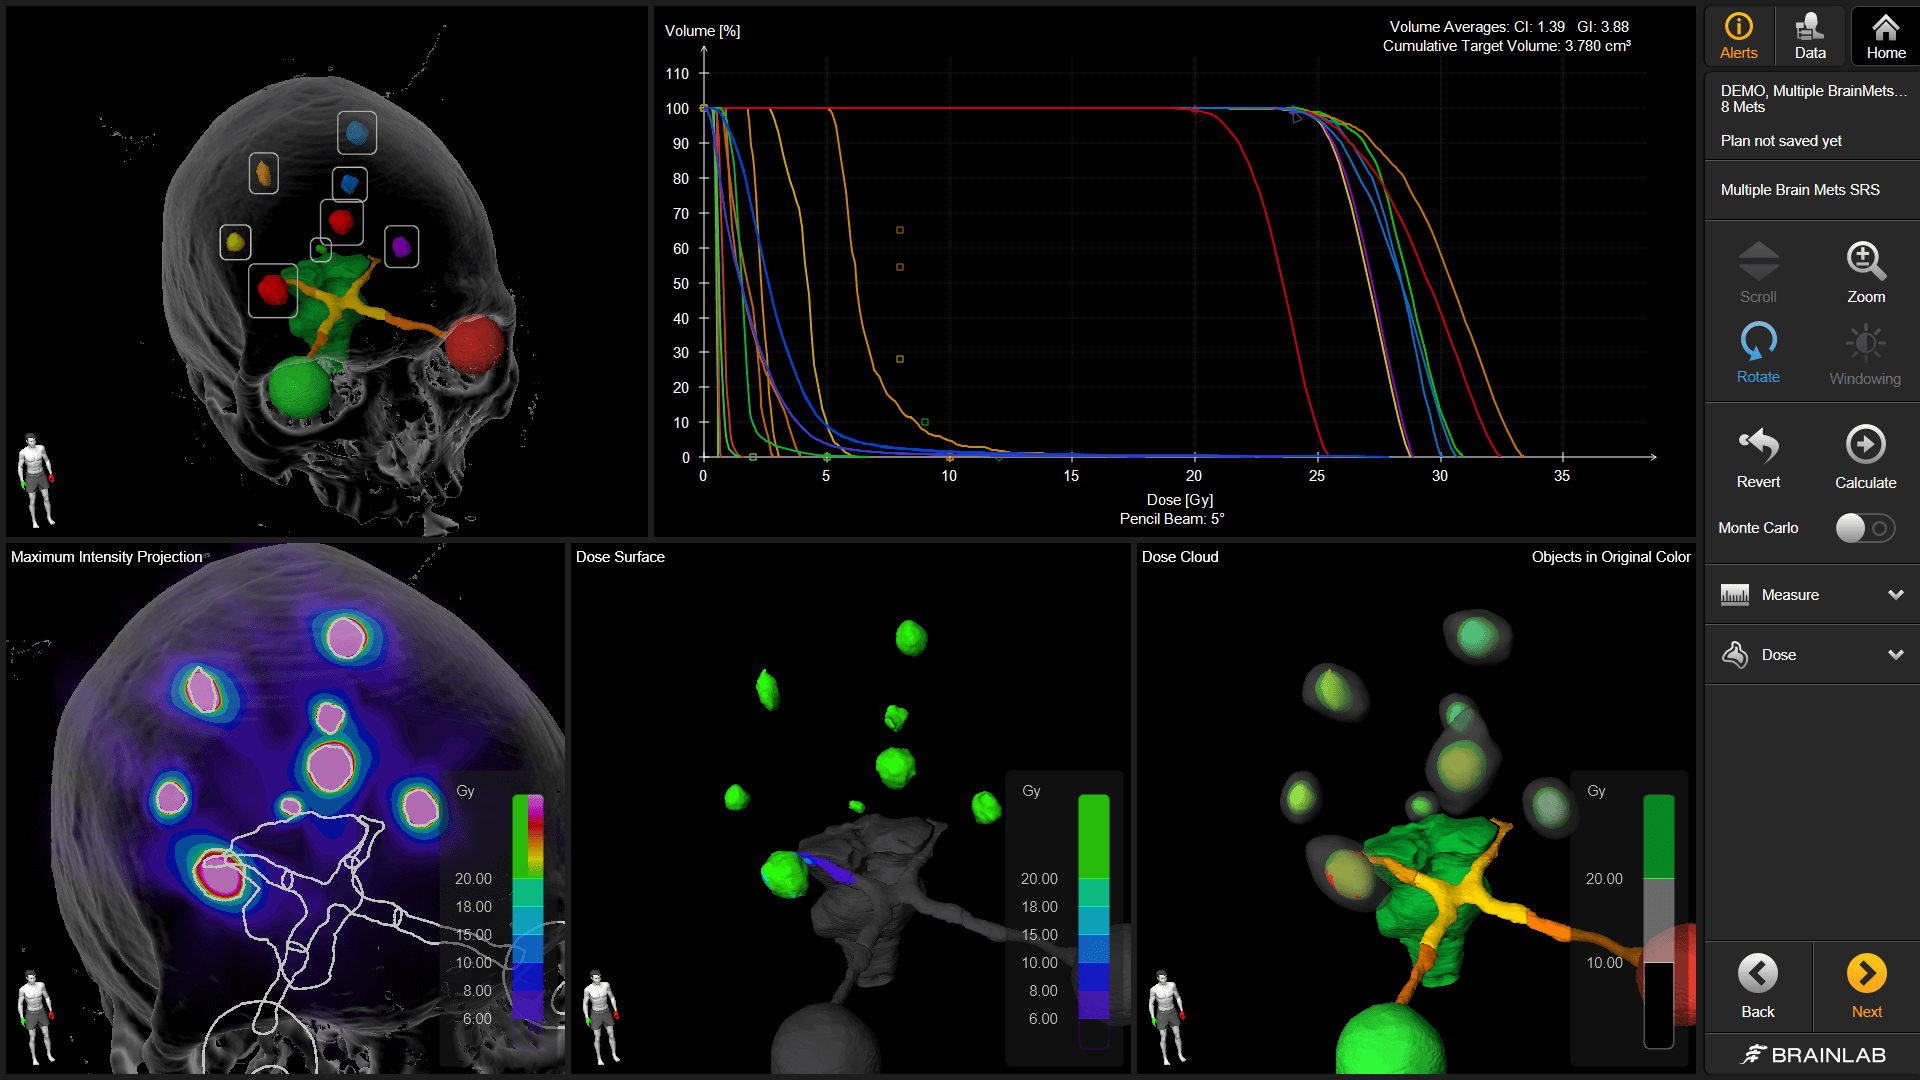 Captura de tela do software Brainlab Elements com diversas visualizações e dados disponíveis que ajudam os usuários a conseguir um planejamento de tratamento radioterápico e de radiocirurgia consistente.